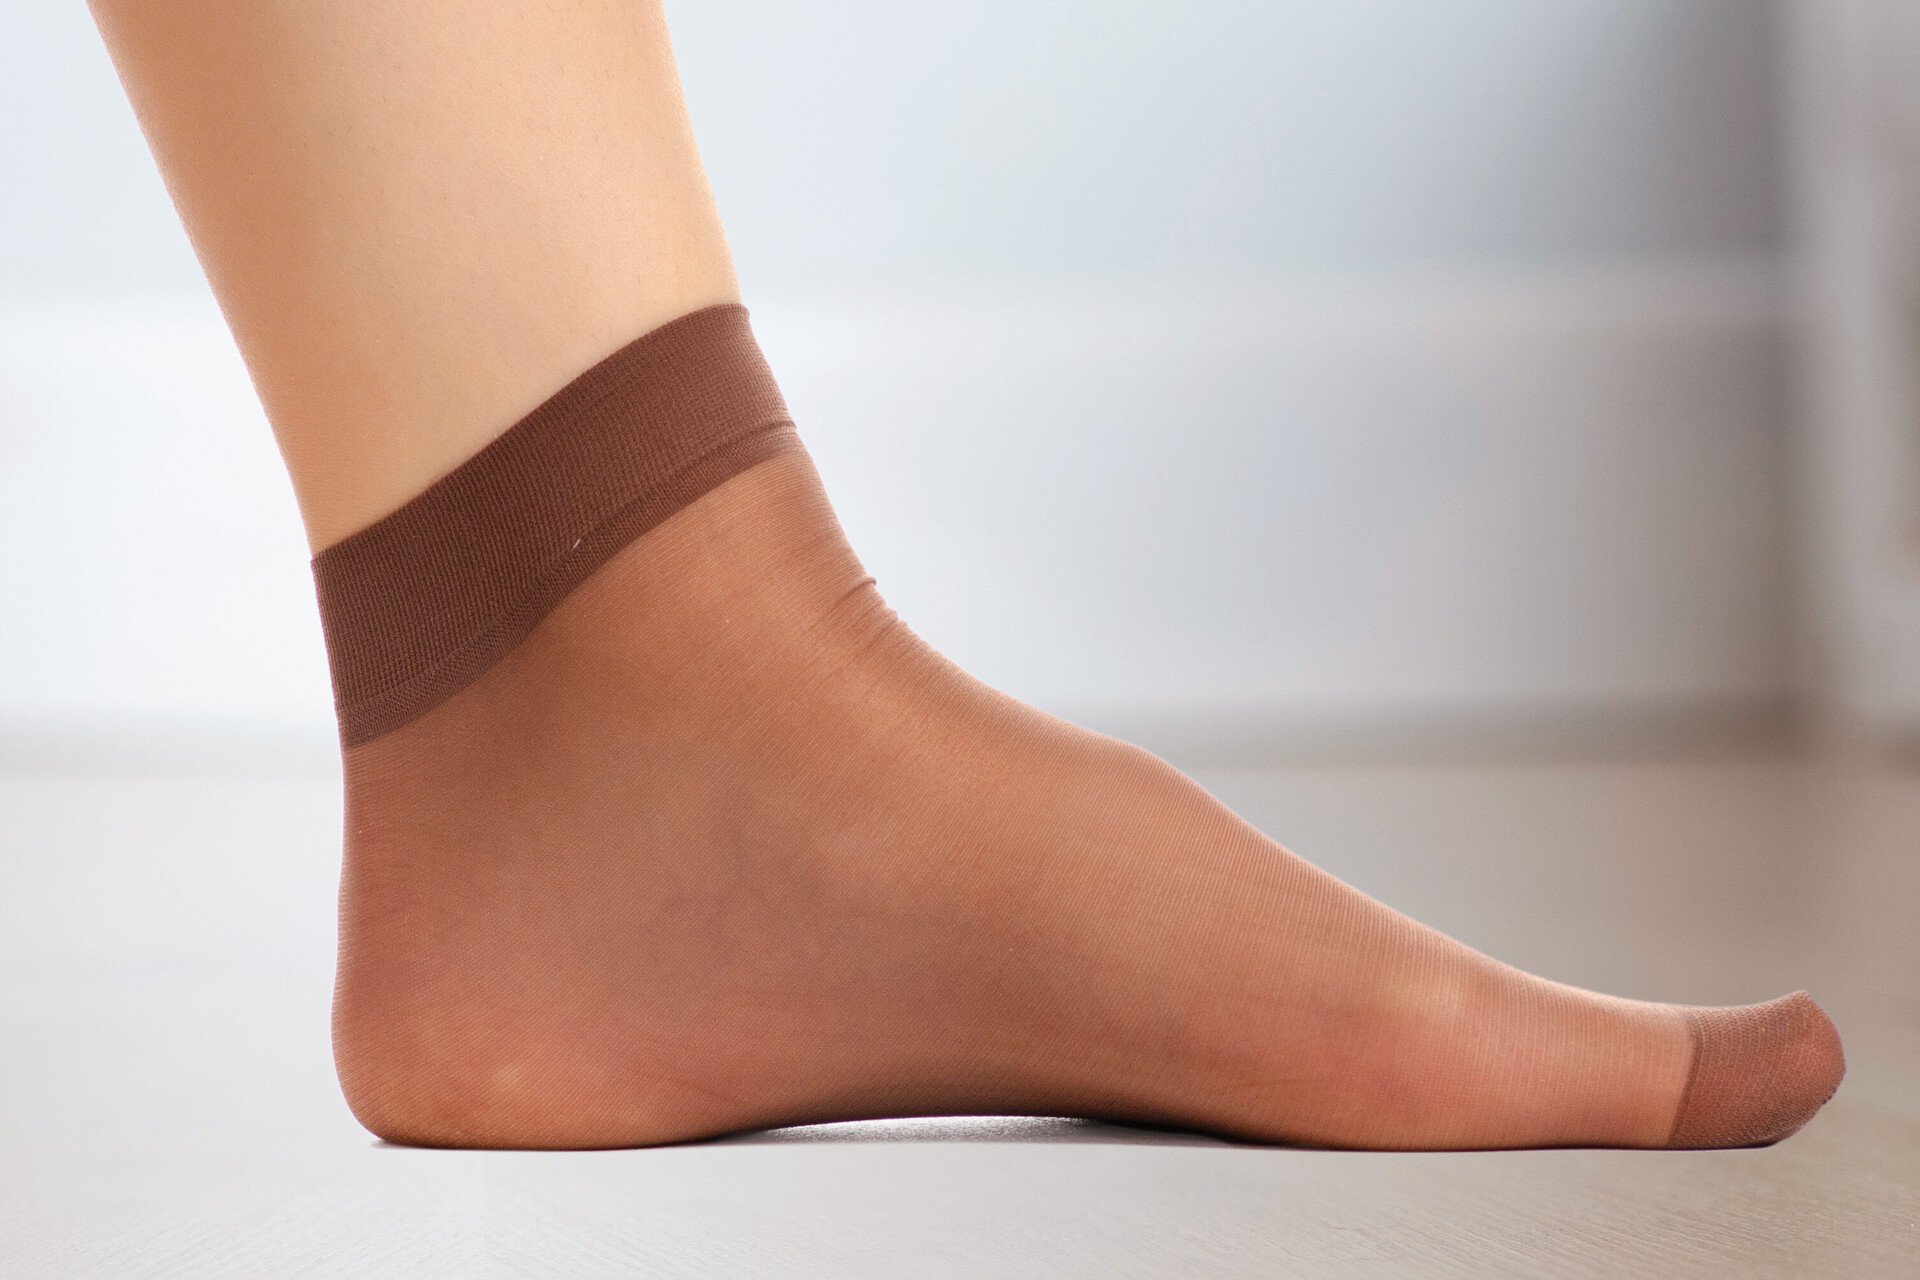 Nahaufnahme eines Fußes mit einer dünnen Nylonsocke. Das Bild steht für Pflegetipps, um Blasen an den Füßen vorzubeugen.